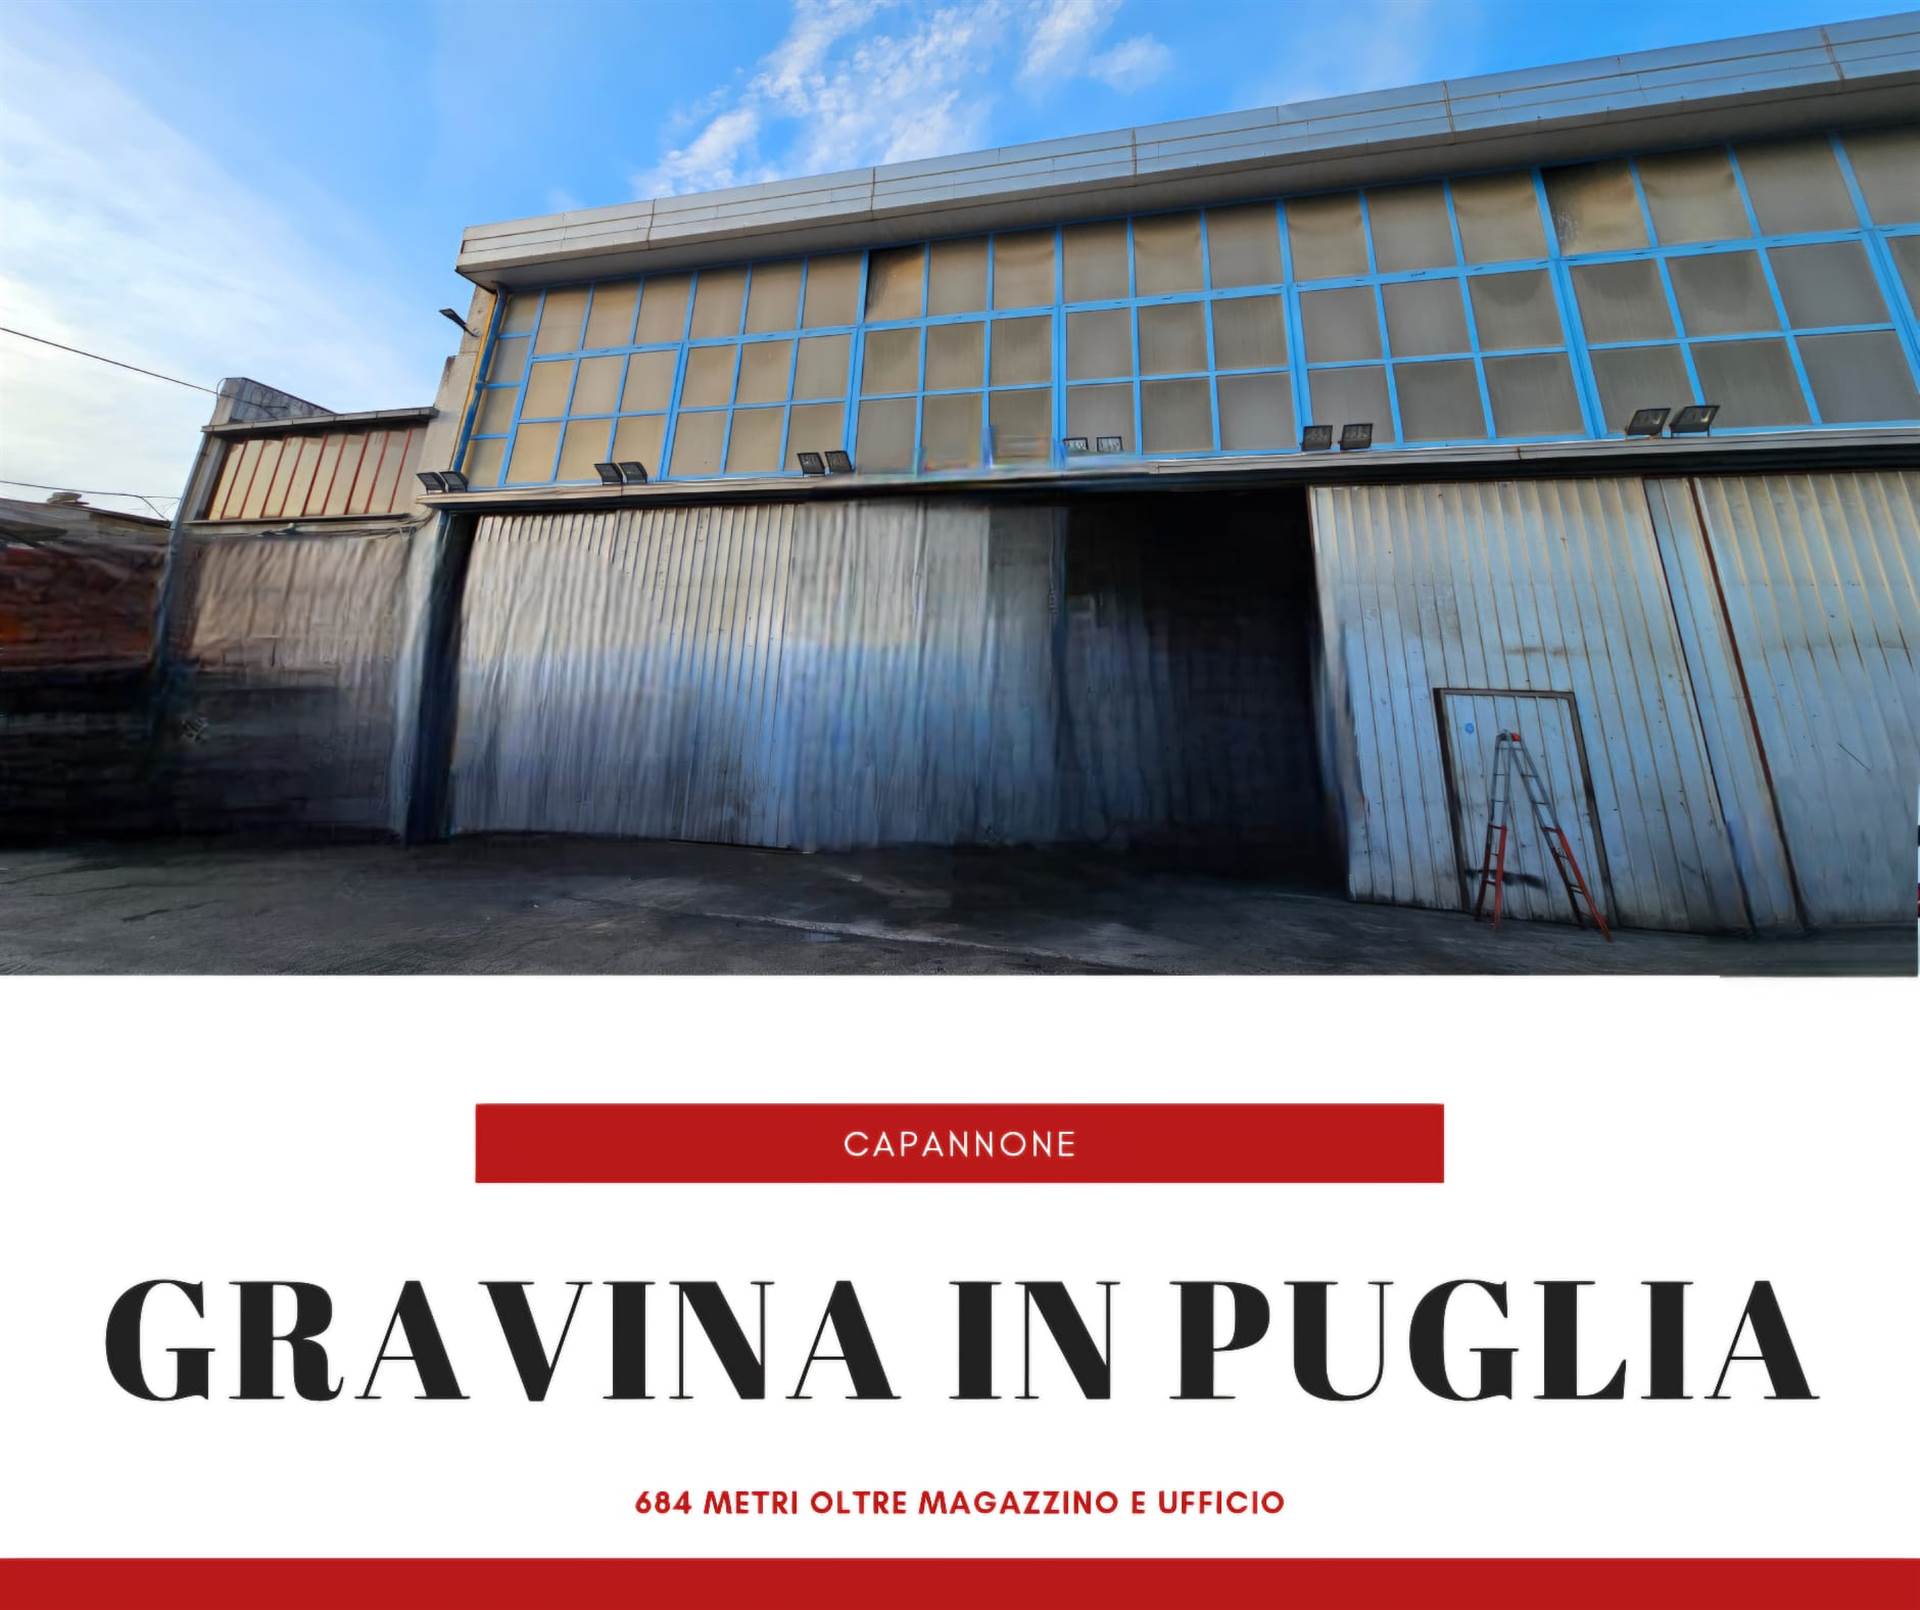 Laboratorio in vendita a Gravina in Puglia, 2 locali, prezzo € 630.000 | PortaleAgenzieImmobiliari.it